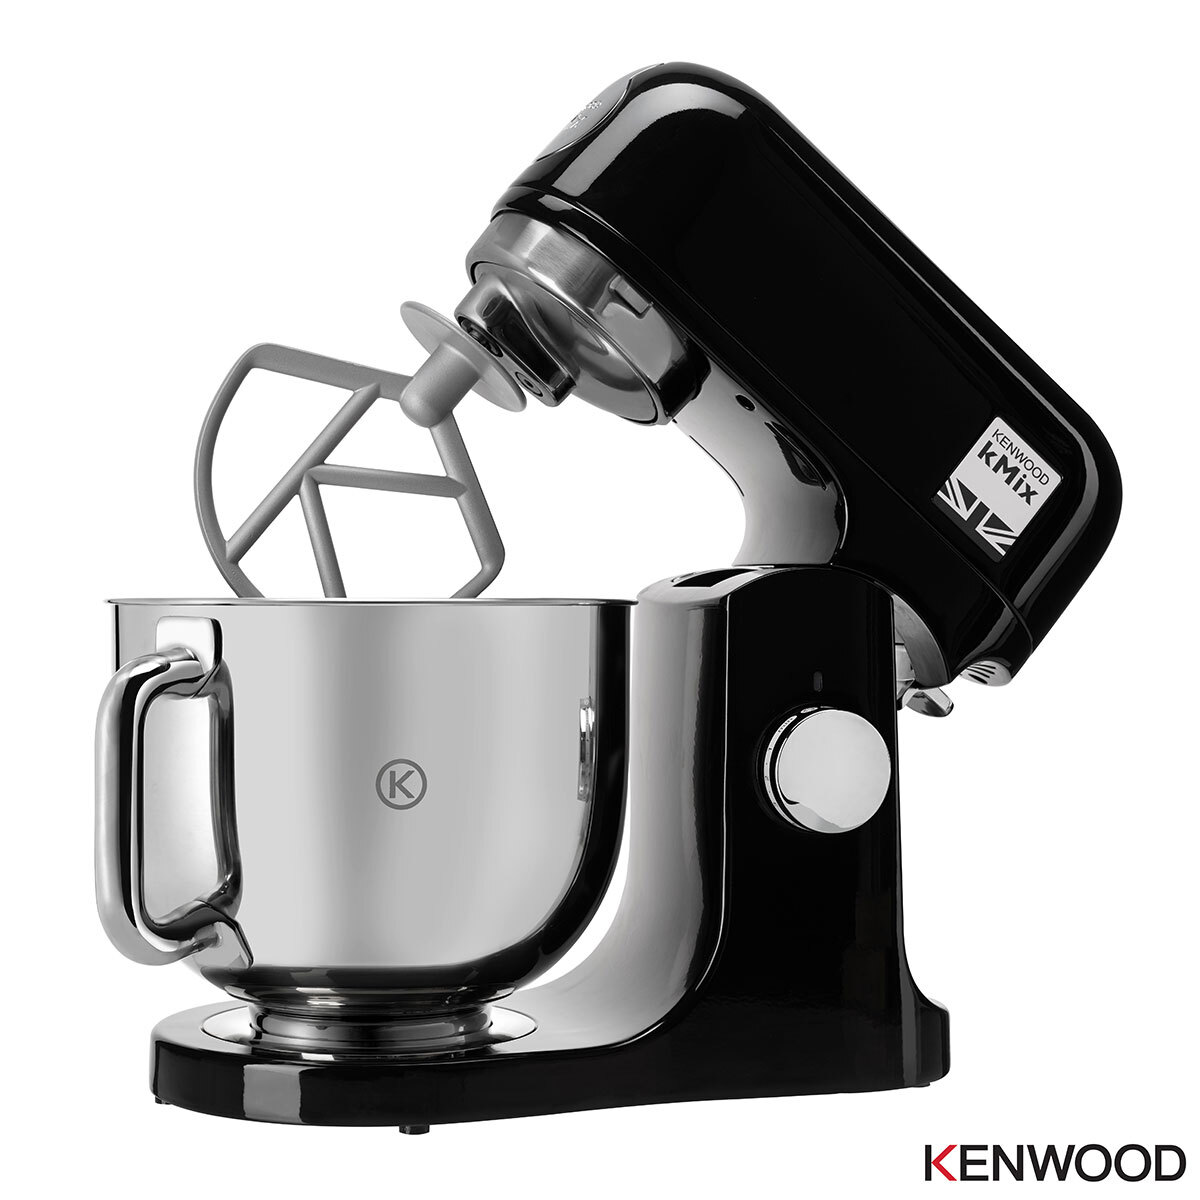 Kenwood kMix Stand Black, KMX750AB Costco UK